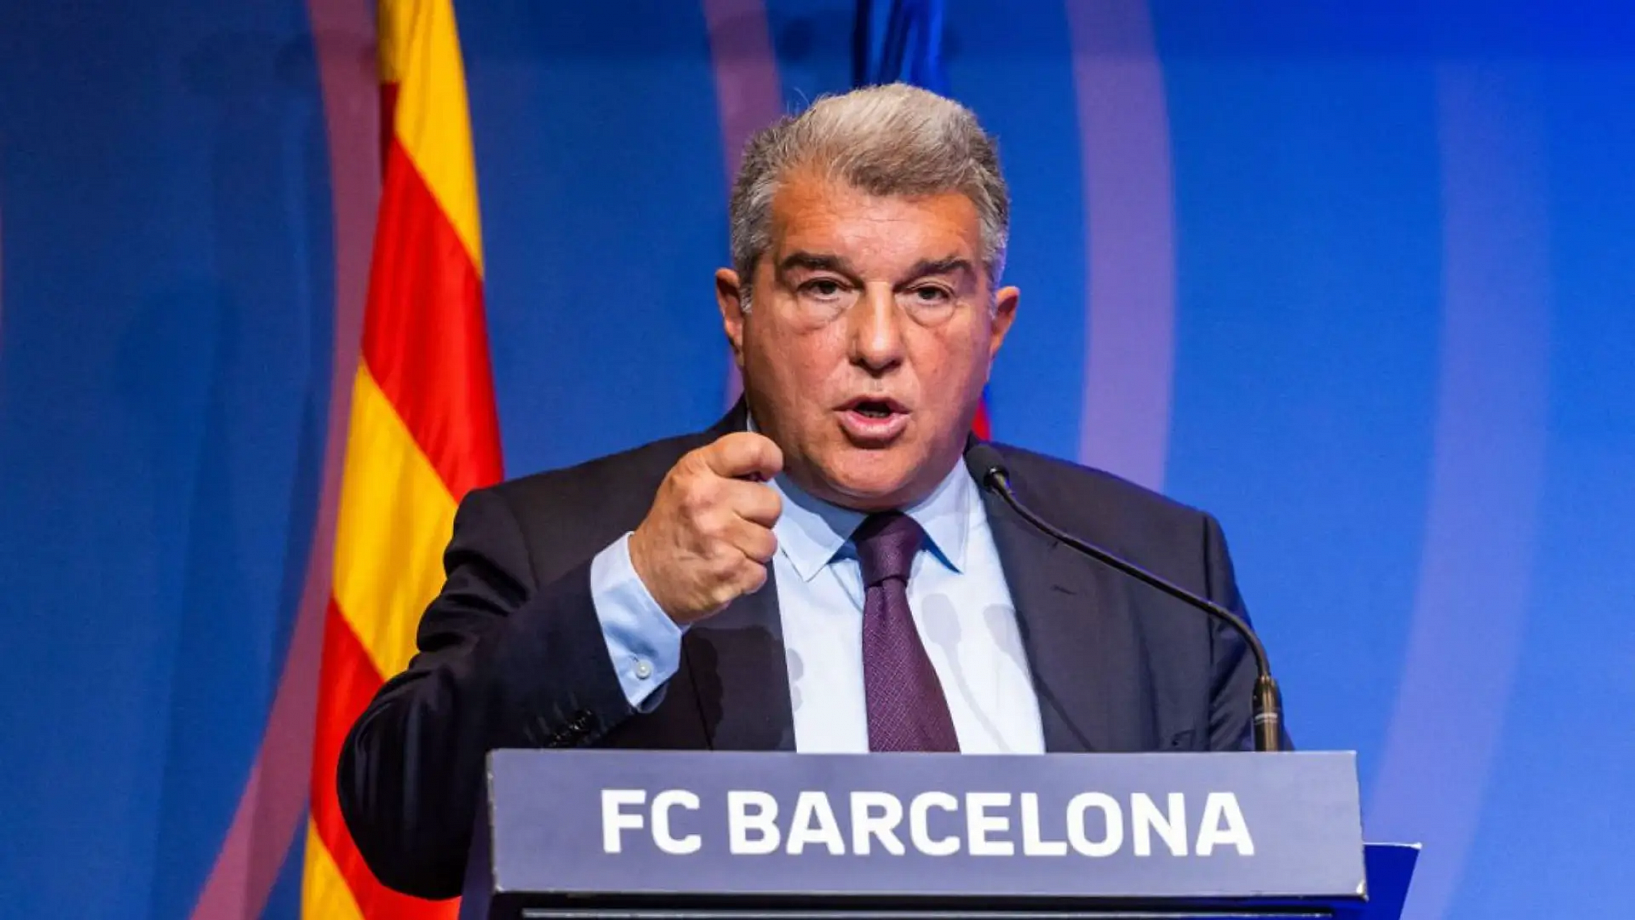 El presidente del FC Barcelona, ​​Laporta, confirma que el club jugará en la próxima Champions League